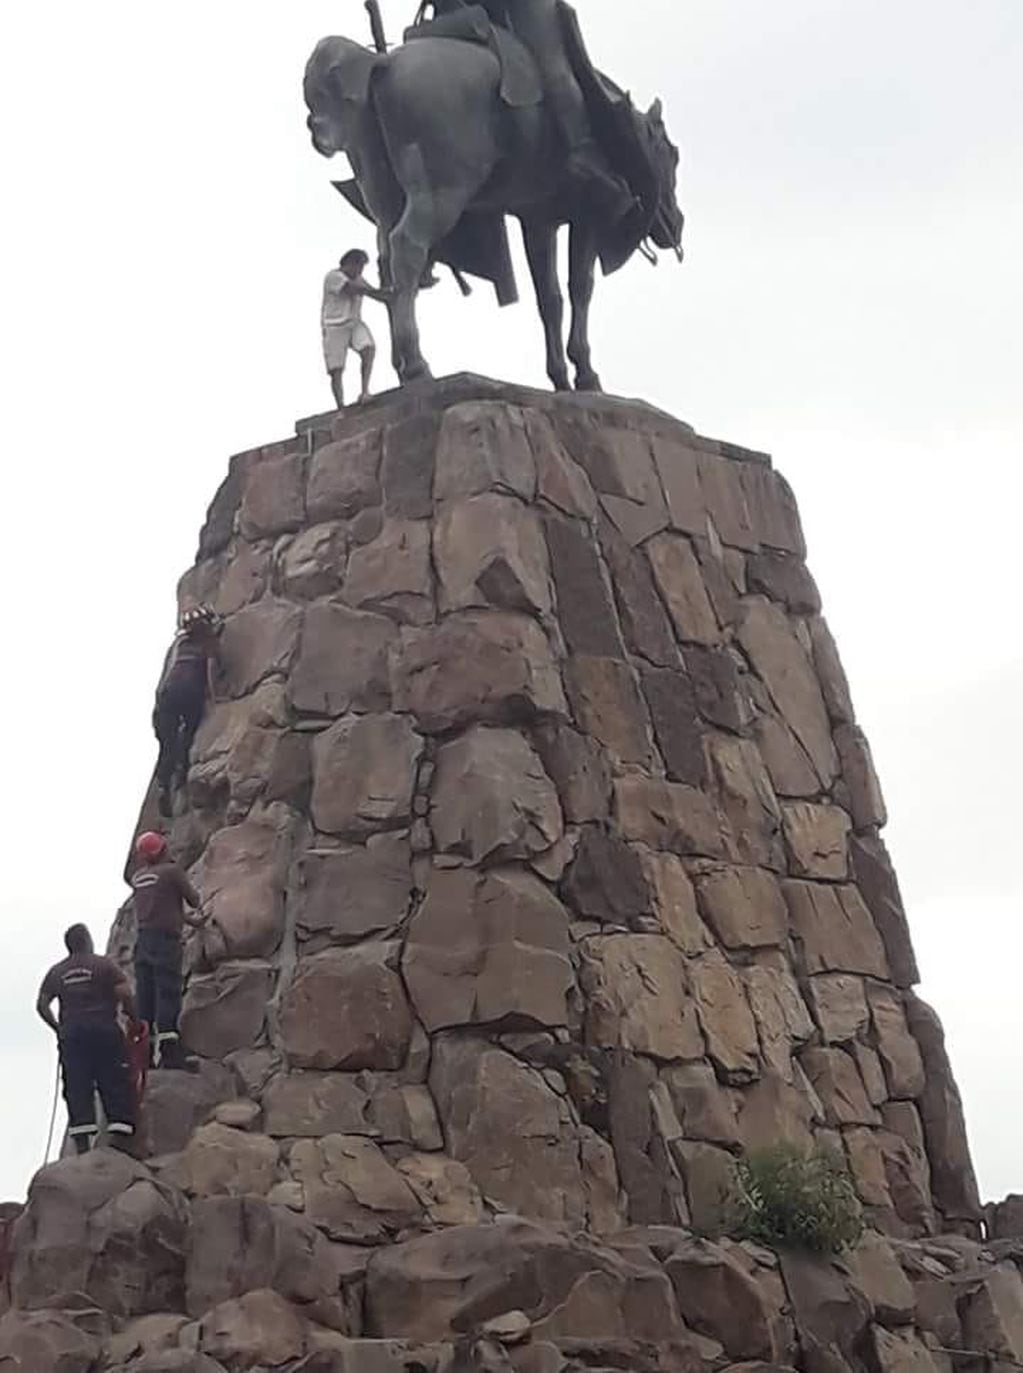 Escaló el Monumento a Güemes, pero no pudo bajar. (Web)